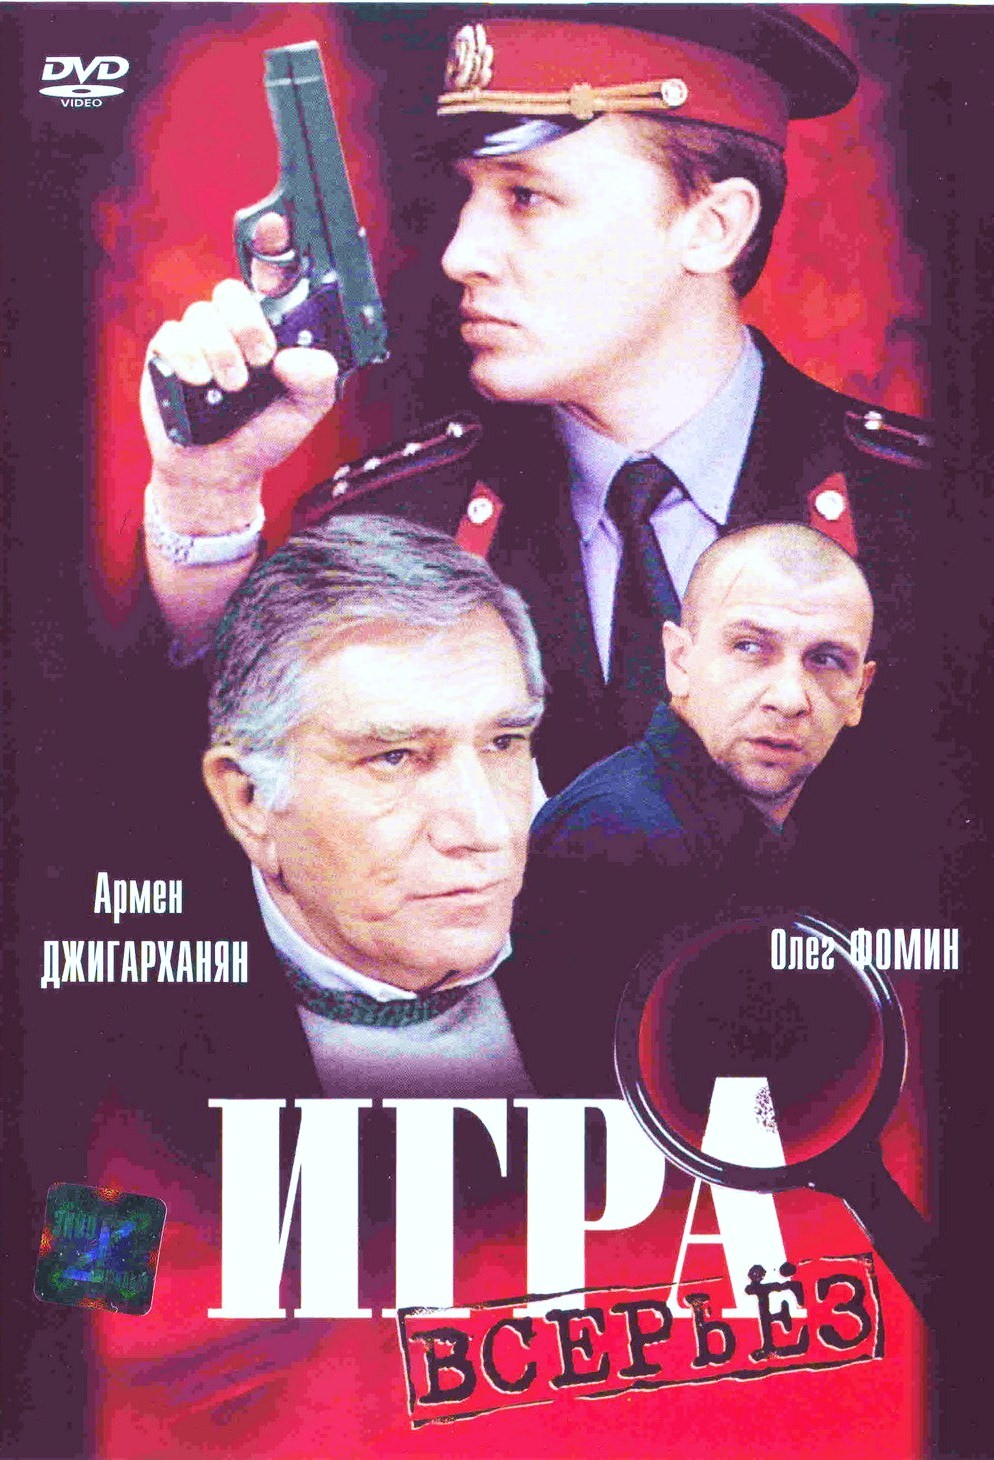 Игра всерьез (1992) DVDRip